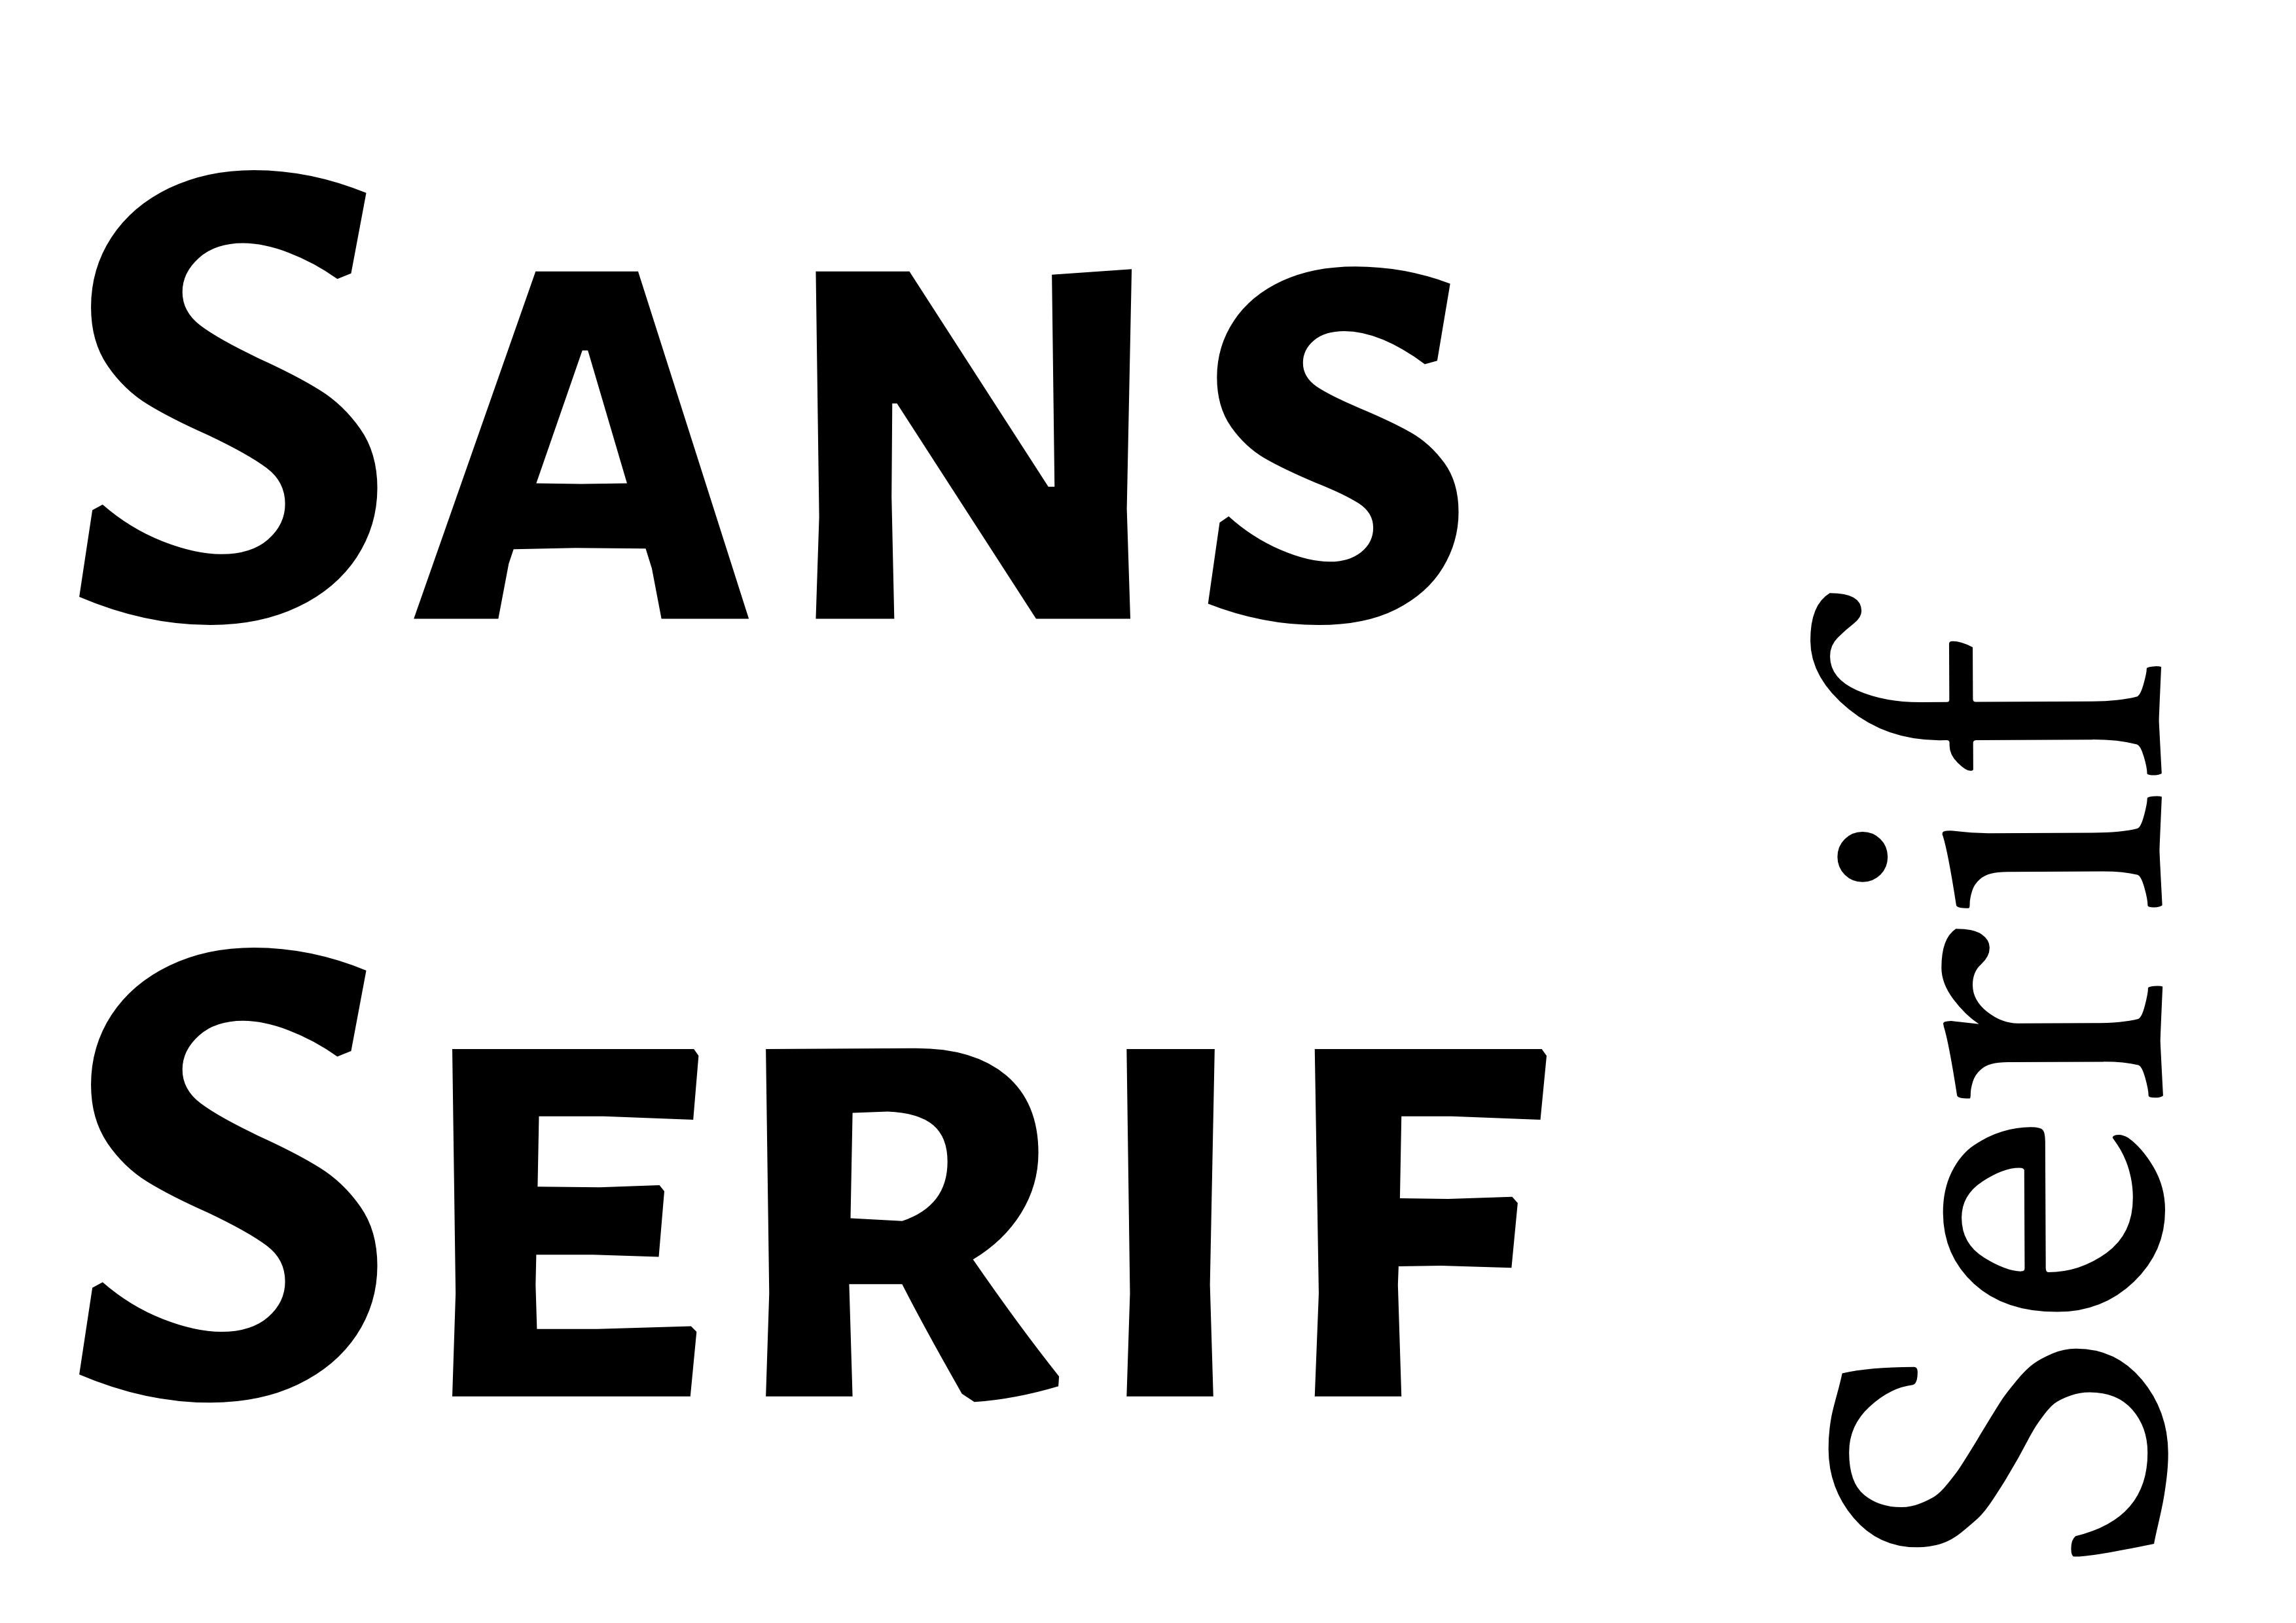 Emparelhamento de Fontes - 'Sans Serif' em negrito preto à esquerda com 'Serif' rotacionado e menor no canto inferior direito - O guia completo sobre fontes: 5 tipos essenciais de fontes em tipografia - Imagem